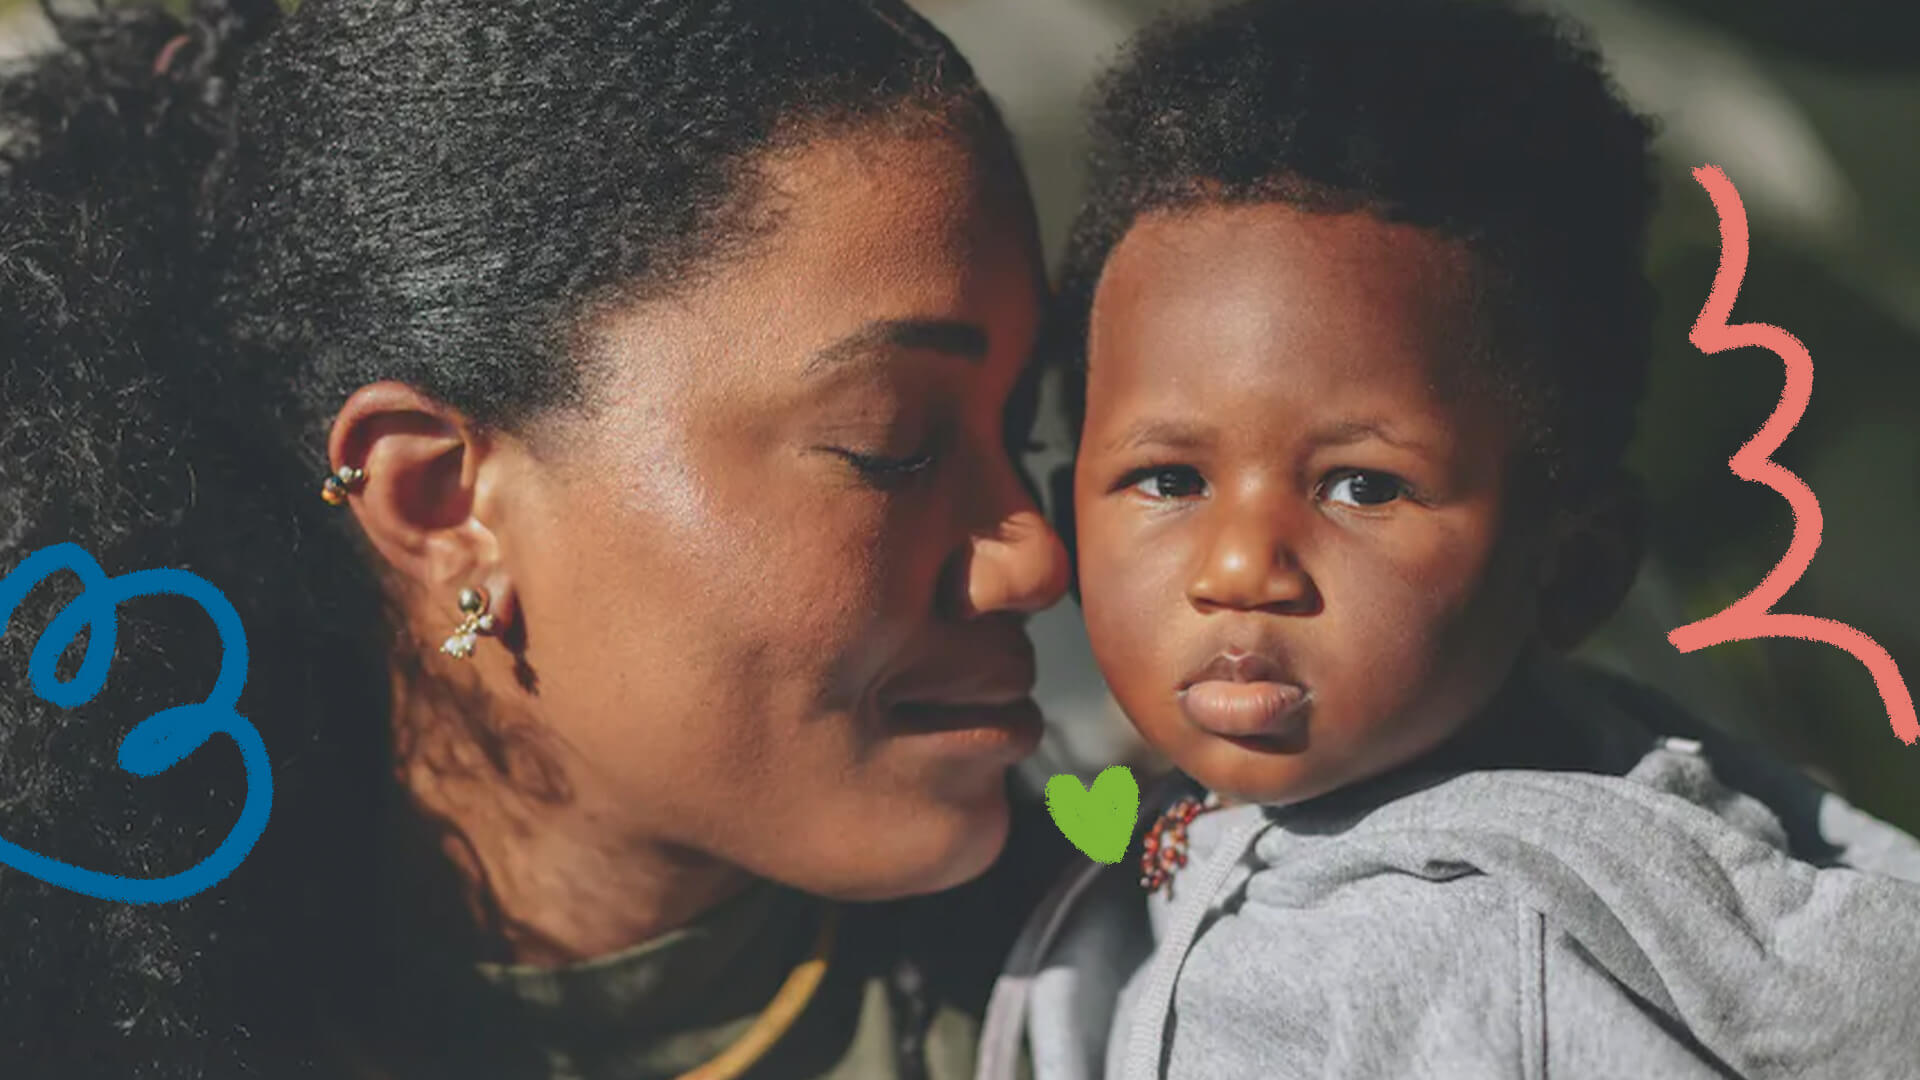 Imagem de uma mulher negra encostando o nariz em seu filho, um menino negro de dois anos. A mulher é Luedji Luna, possui pele escura e cabelos crespos pretos; seu filho, Dayo, também possui pele escura e veste um moletom cinza.